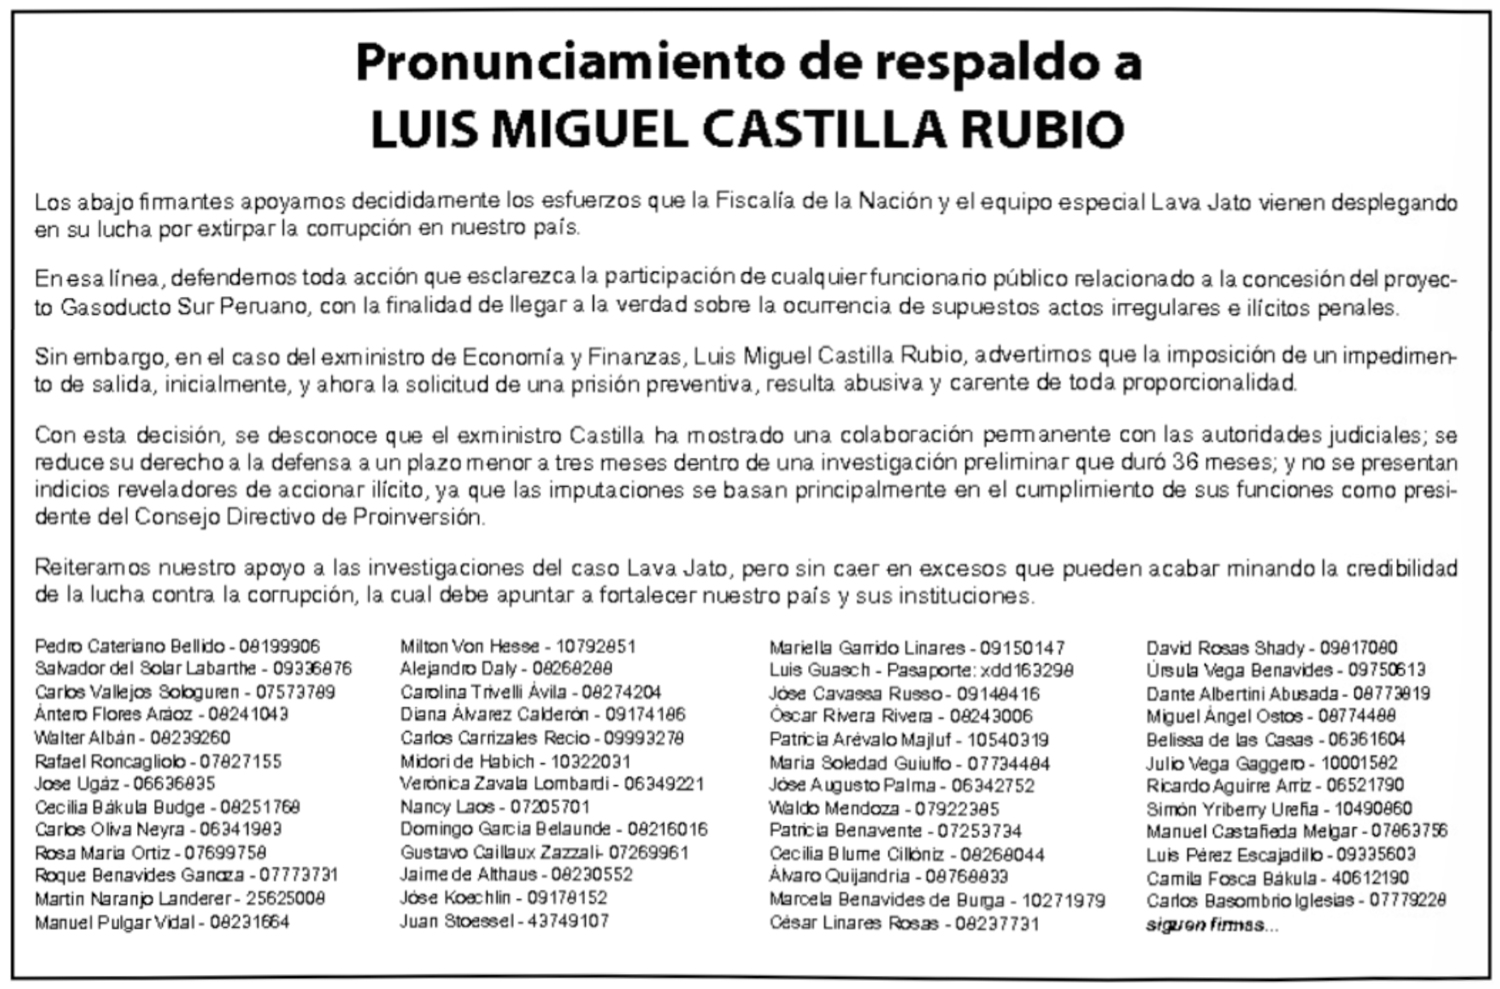 Pronunciamiento de respaldo a LUIS MIGUEL CASTILLA RUBIO